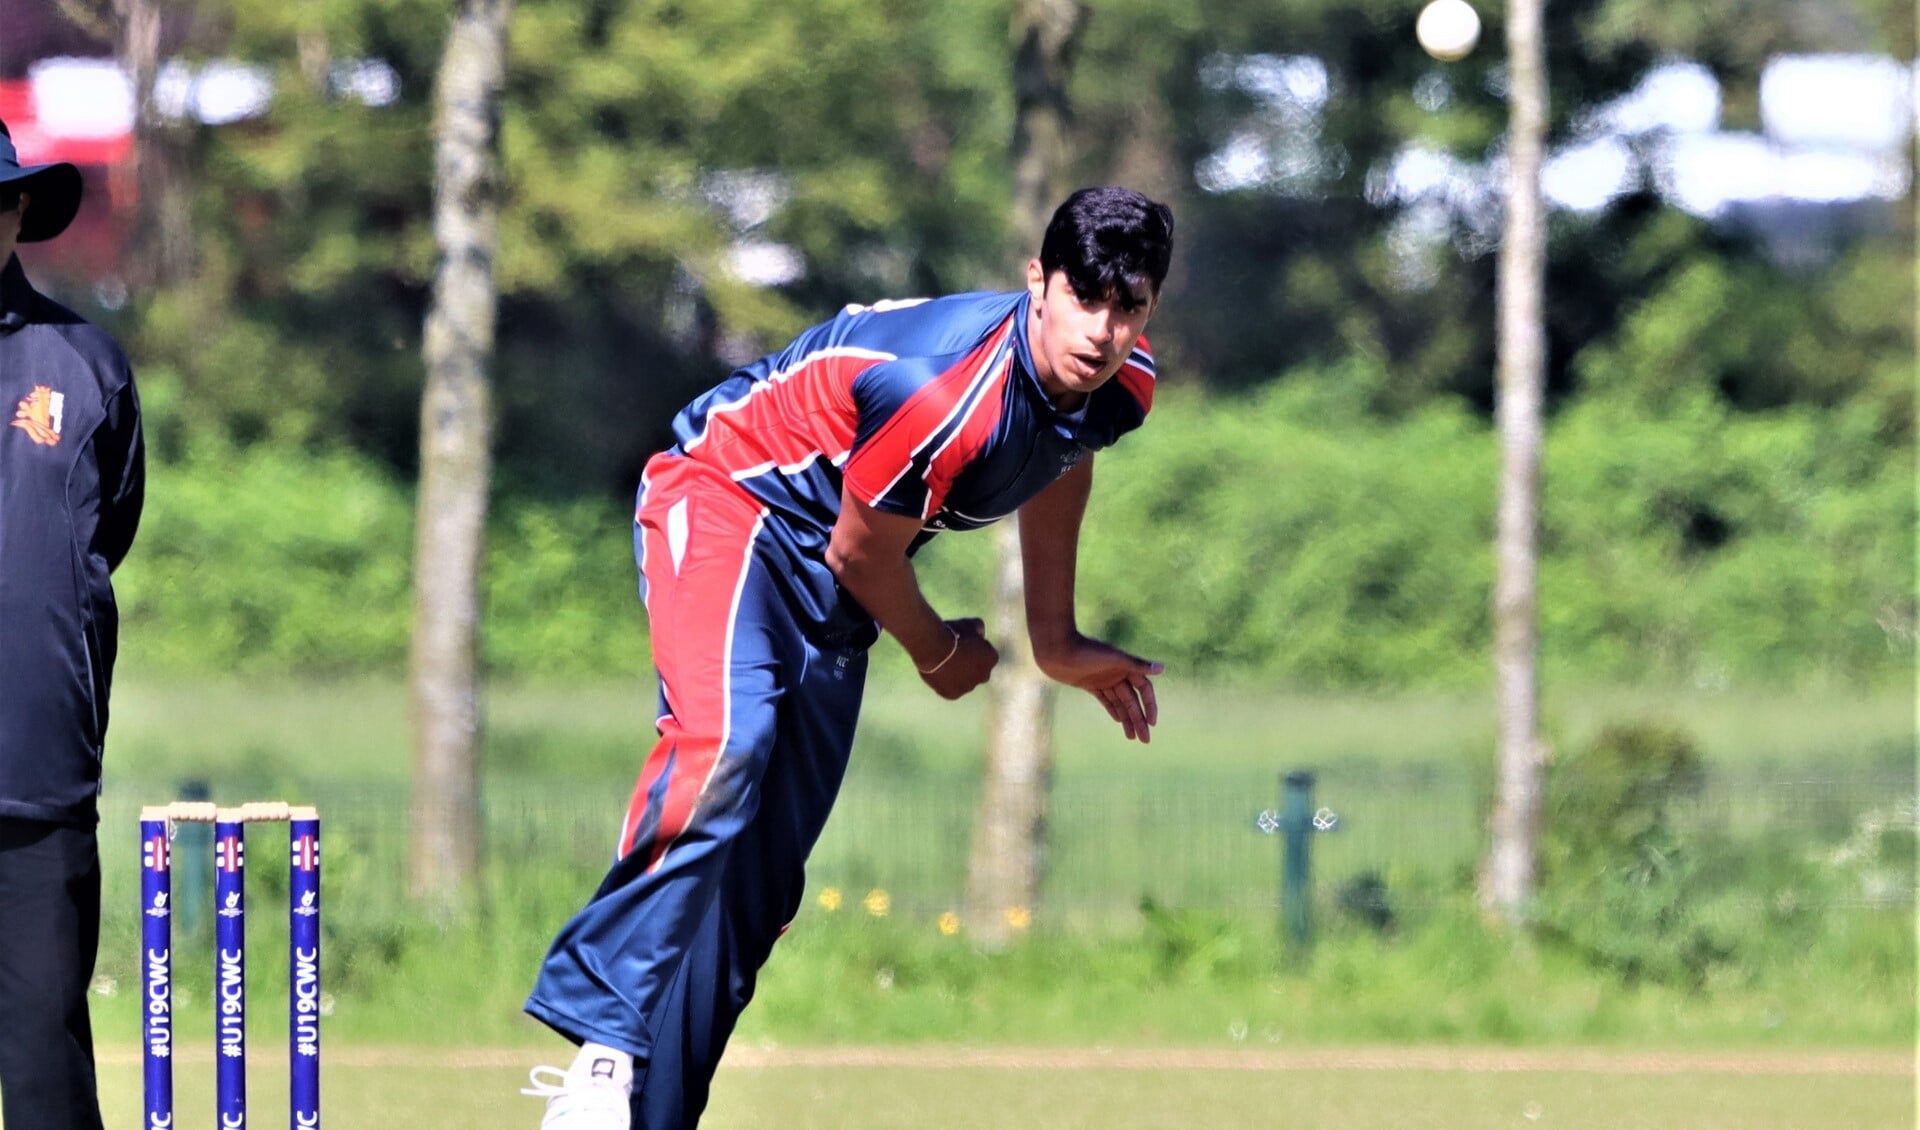 Aryan Dutt maakte indruk met vier wickets voor zes runs (foto: Catch of the Day BV).